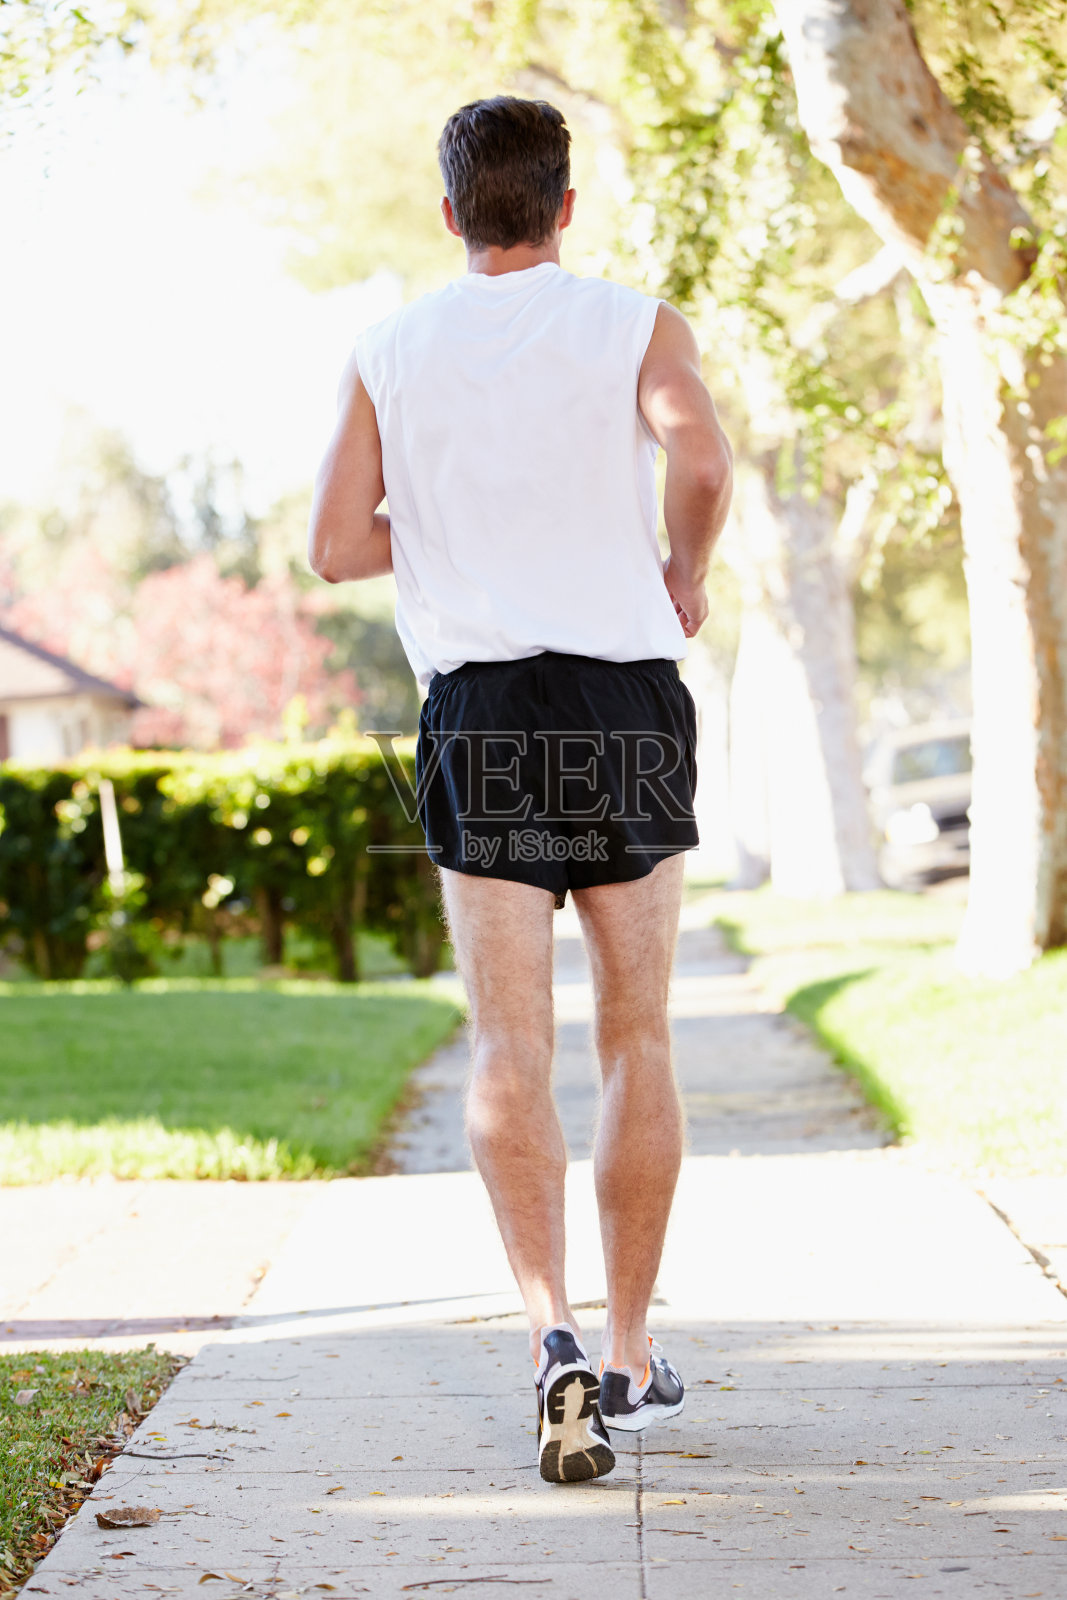 男性跑步者在郊区街道上锻炼的后视图照片摄影图片